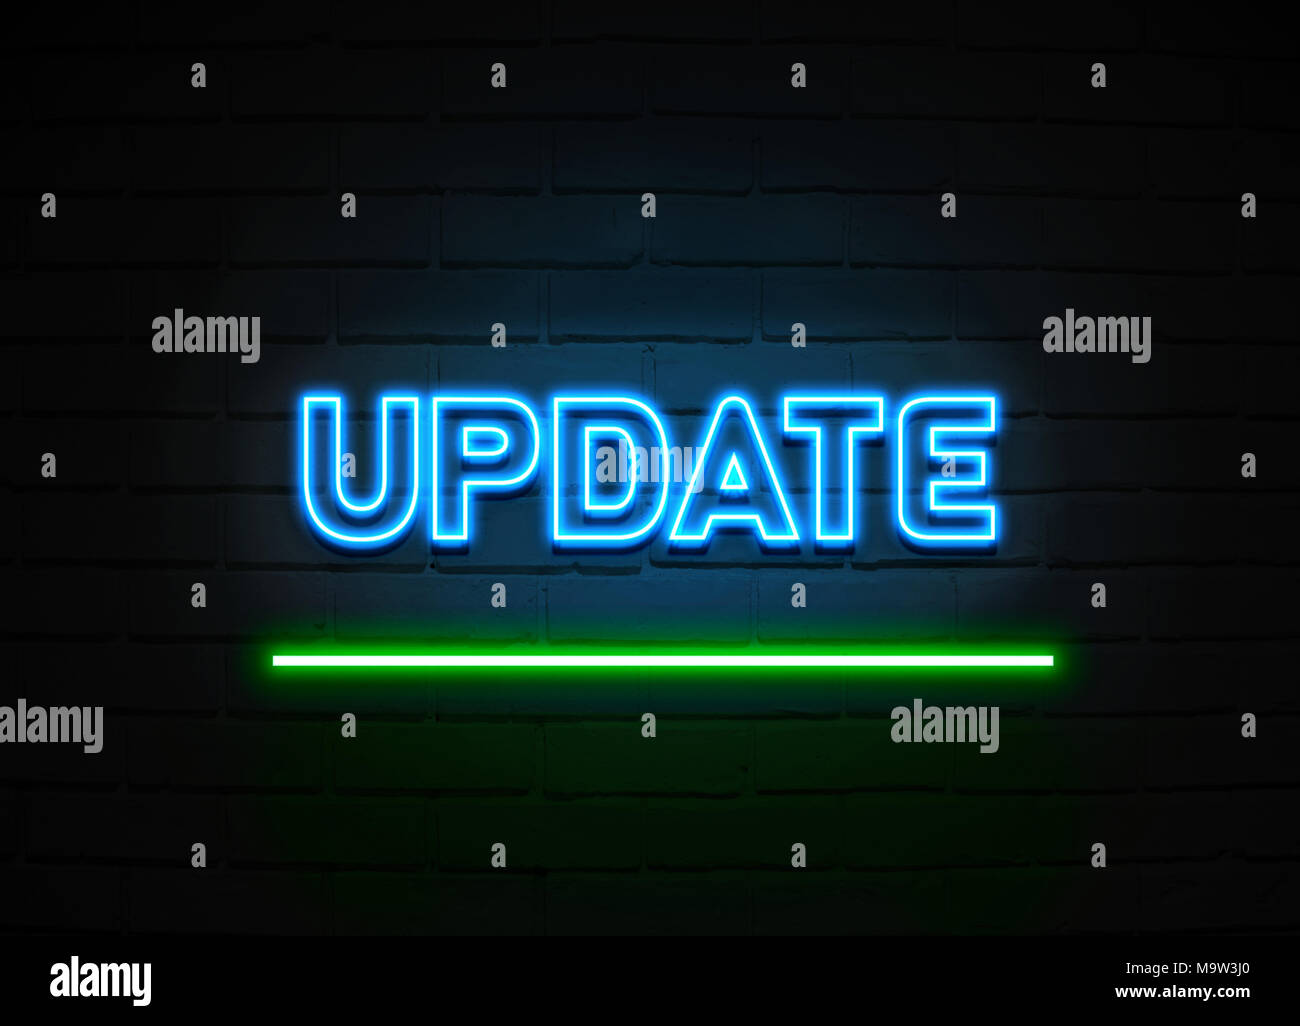 Update Leuchtreklame - glühende Leuchtreklame auf brickwall Wand - 3D-Royalty Free Stock Illustration dargestellt. Stockfoto